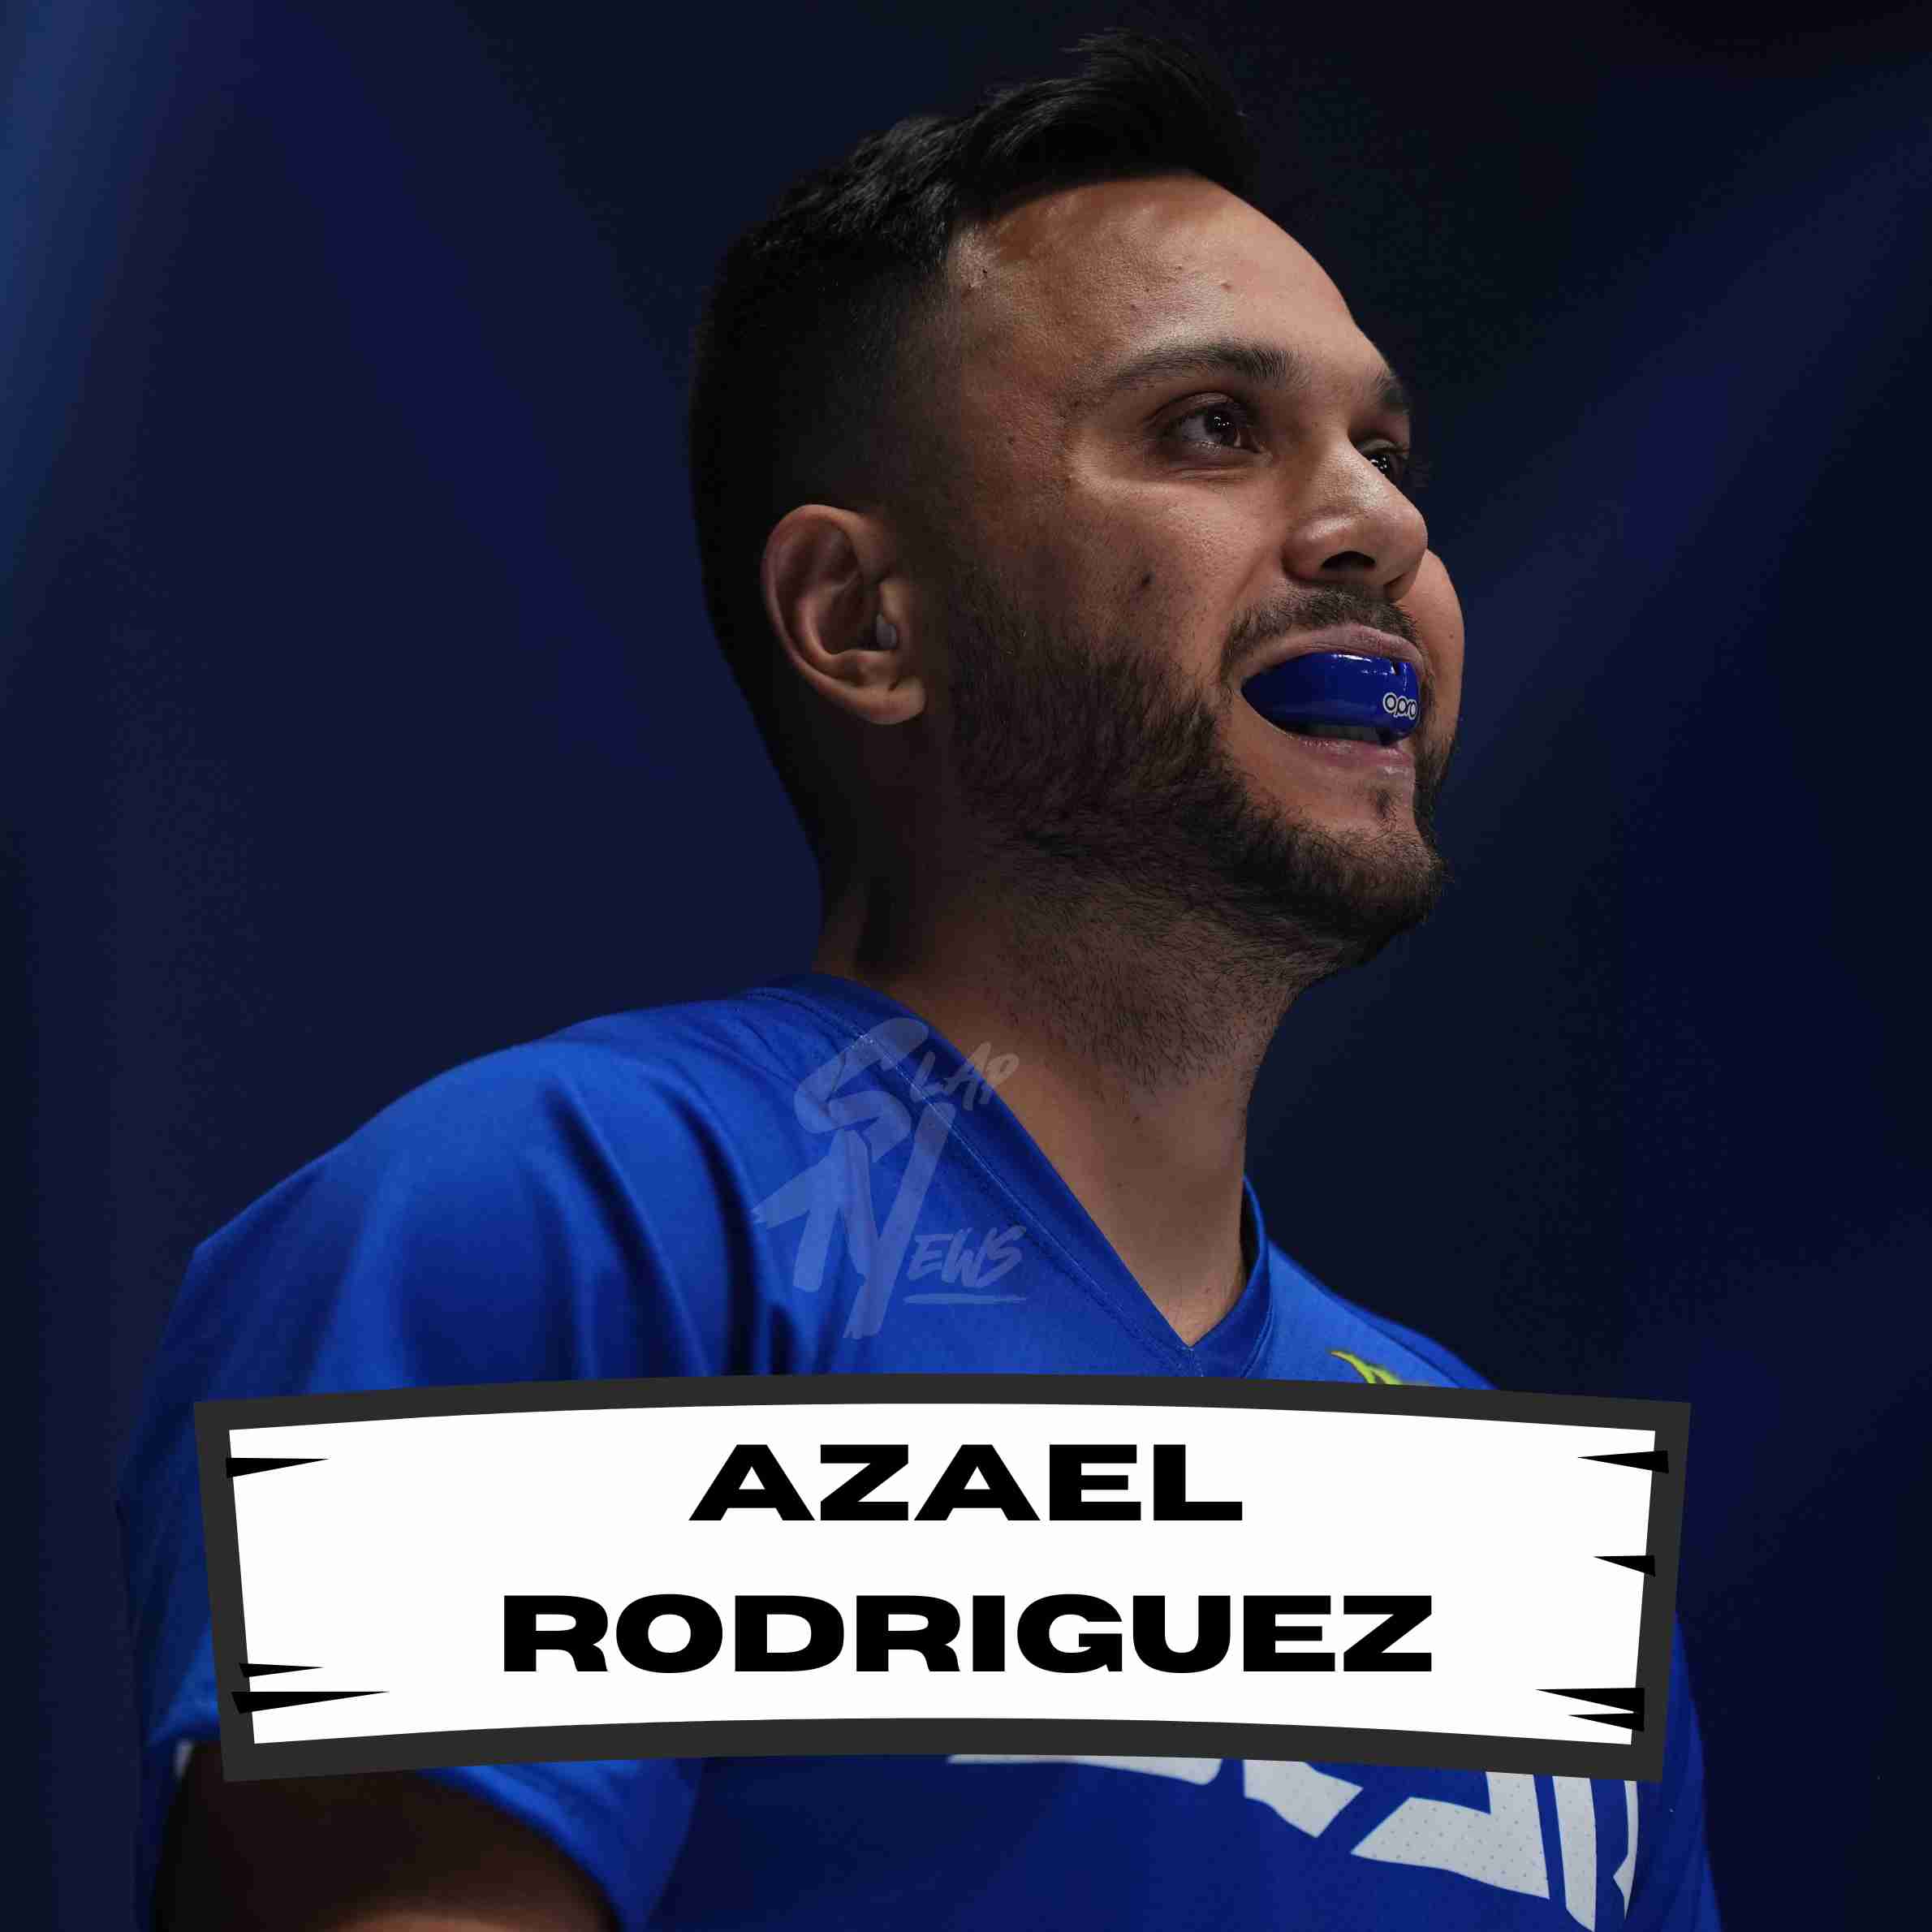 Azael Rodriguez Power Slap | Slap News